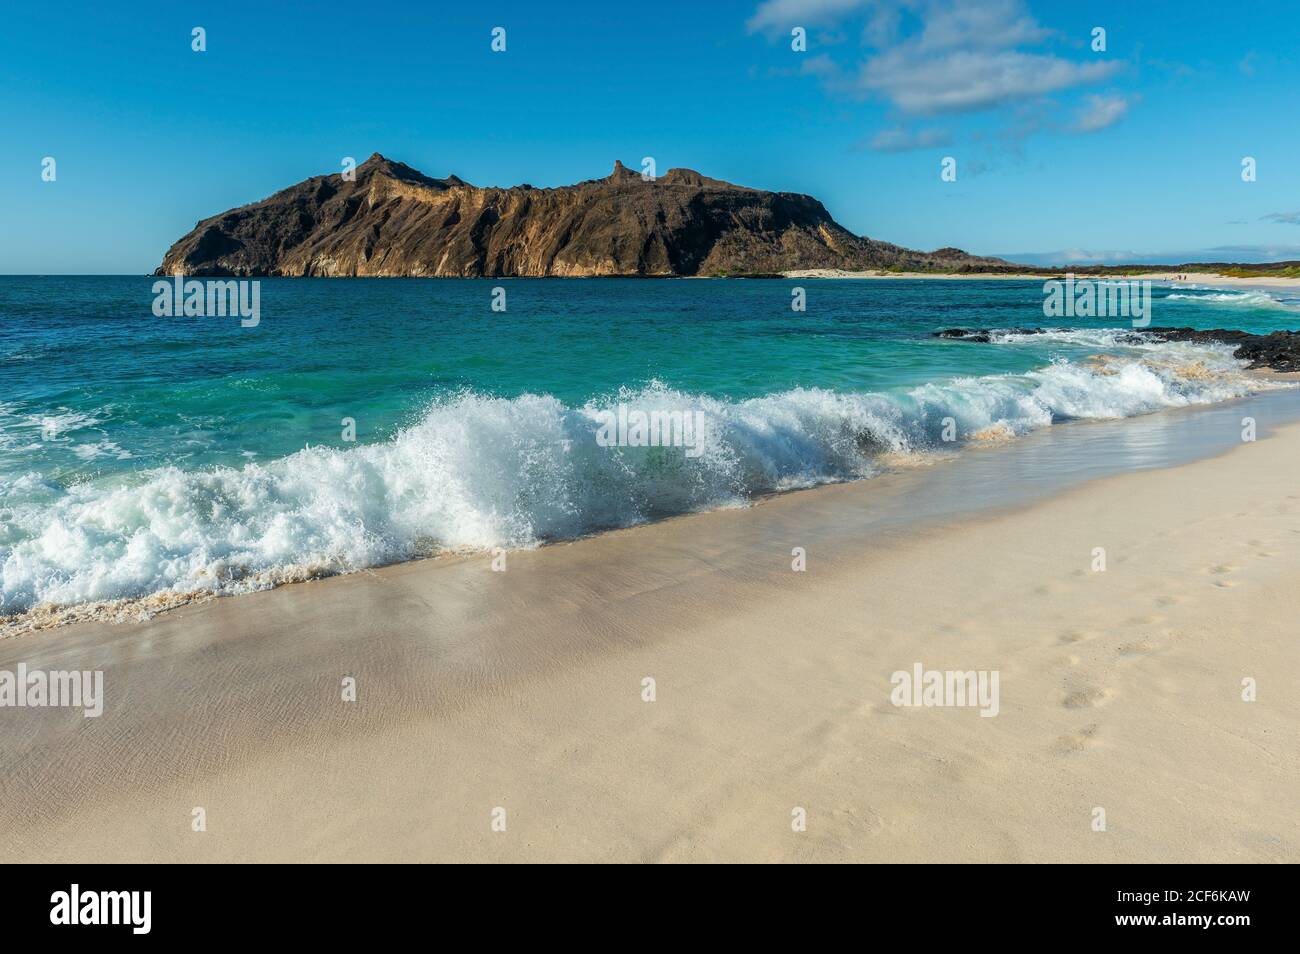 Paysage de fortes vagues près de la plage à Stephens Bay avec Witch Hill en arrière-plan, île de San Cristobal, Galapagos, Equateur. Banque D'Images